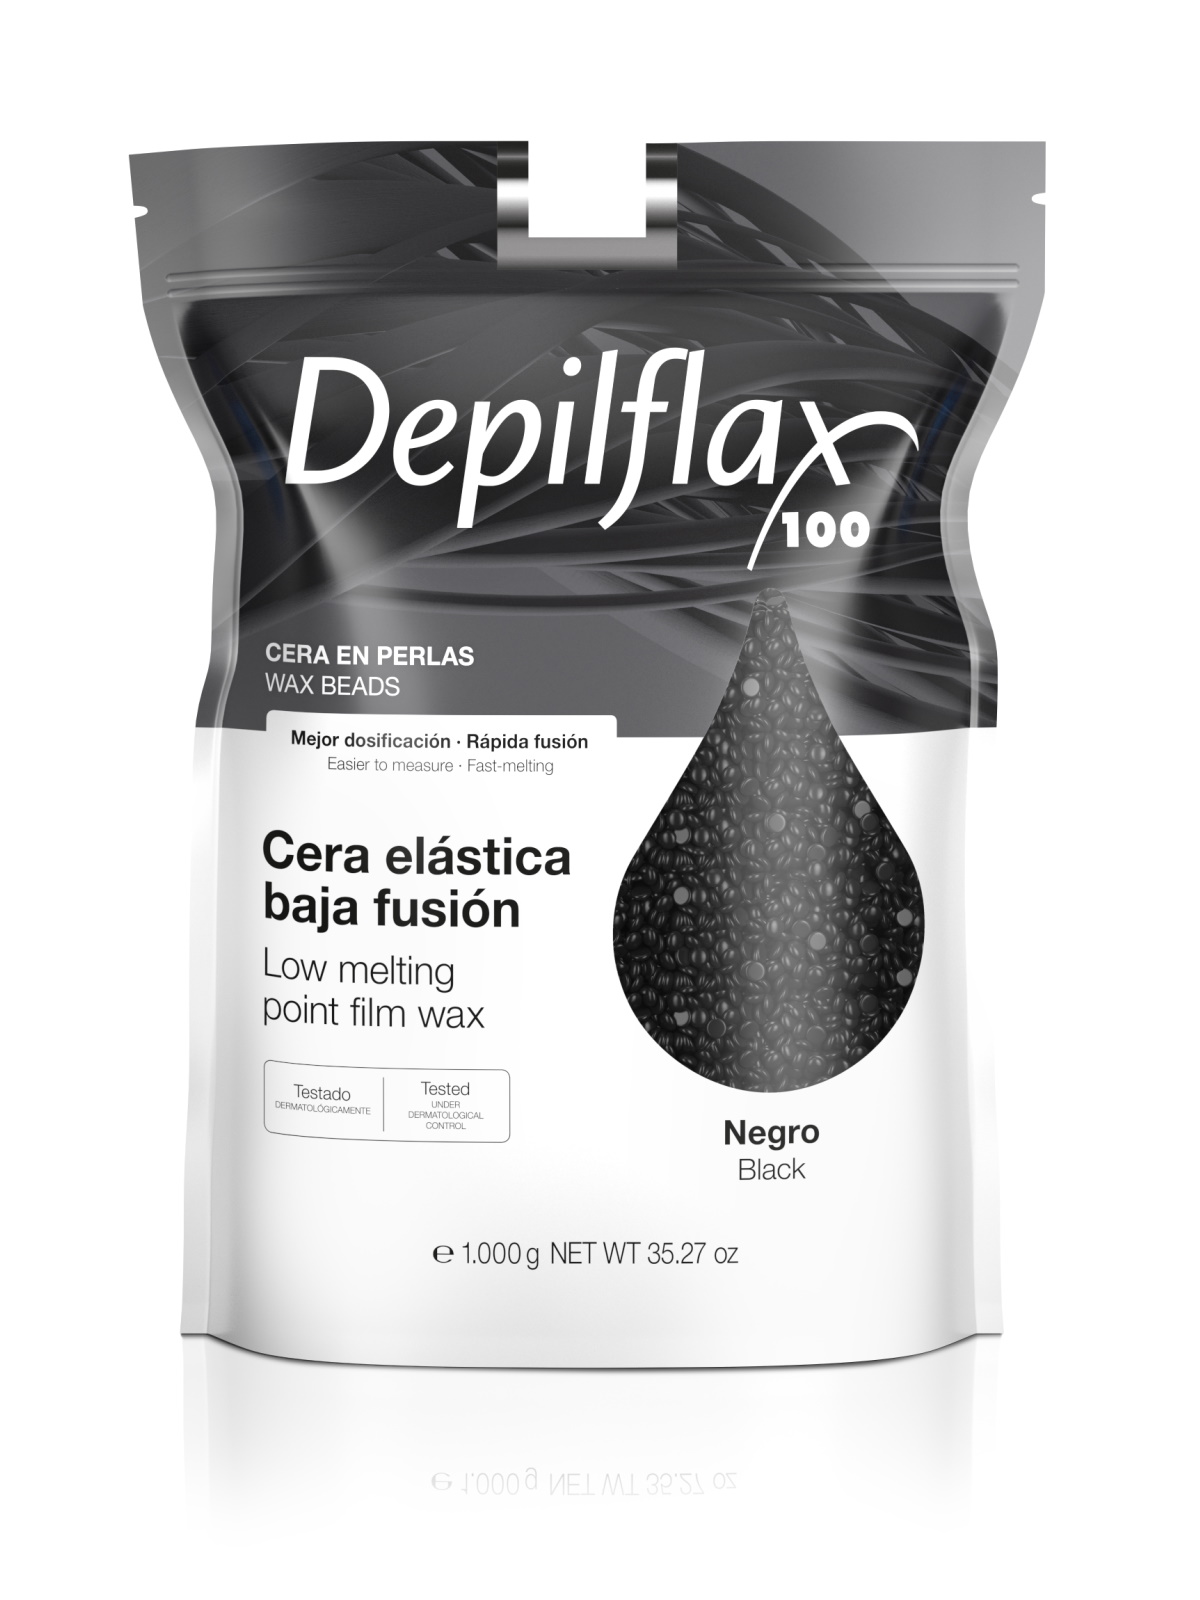 Воск для депиляции Depilflax Черный 1000 г воск для депиляции depilflax 250 г